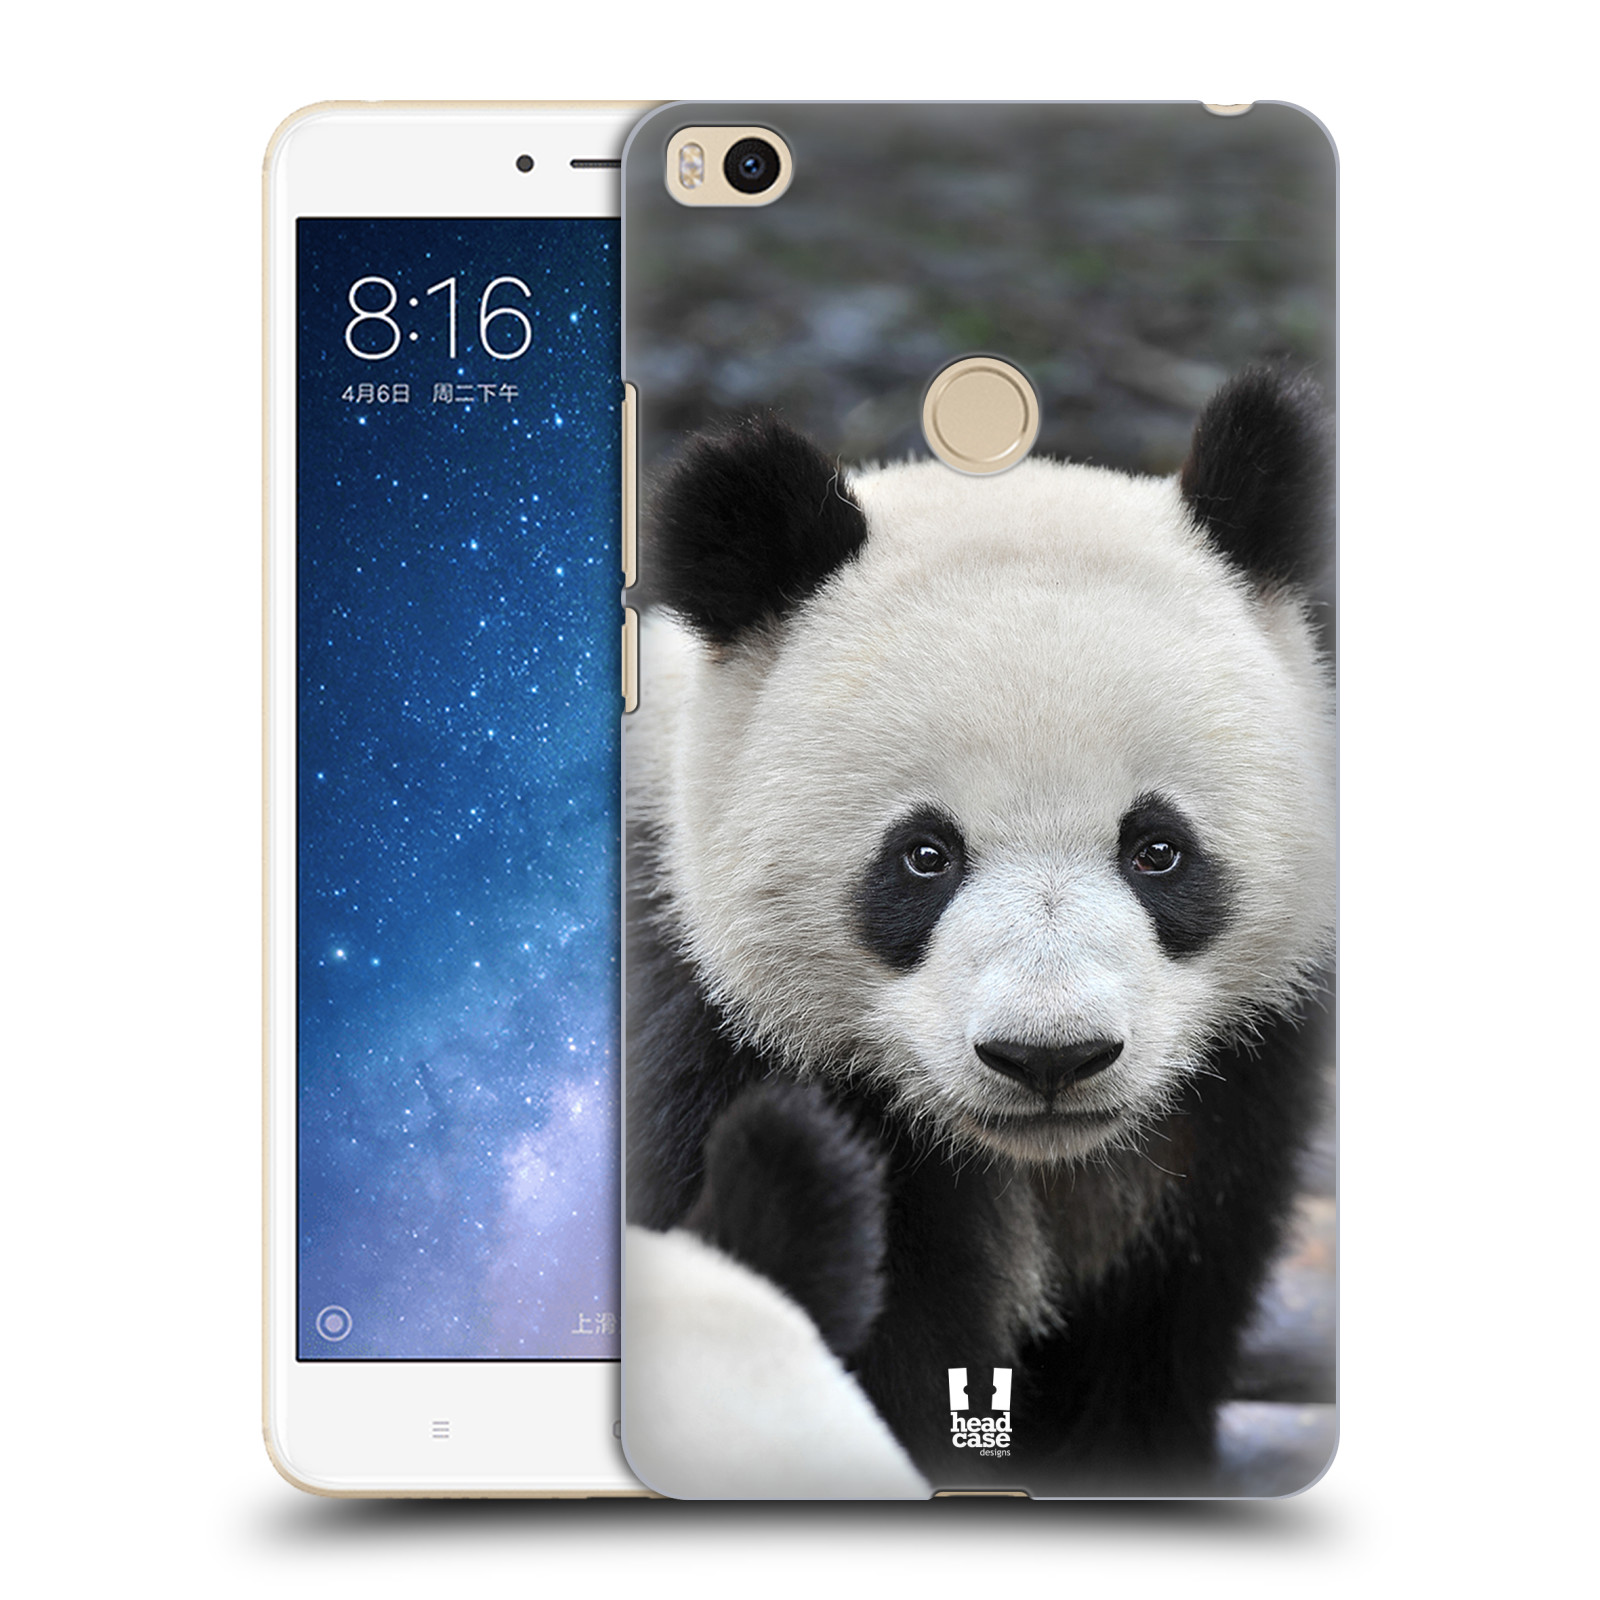 Zadní obal pro mobil Xiaomi Mi Max 2 - HEAD CASE - Svět zvířat medvěd panda